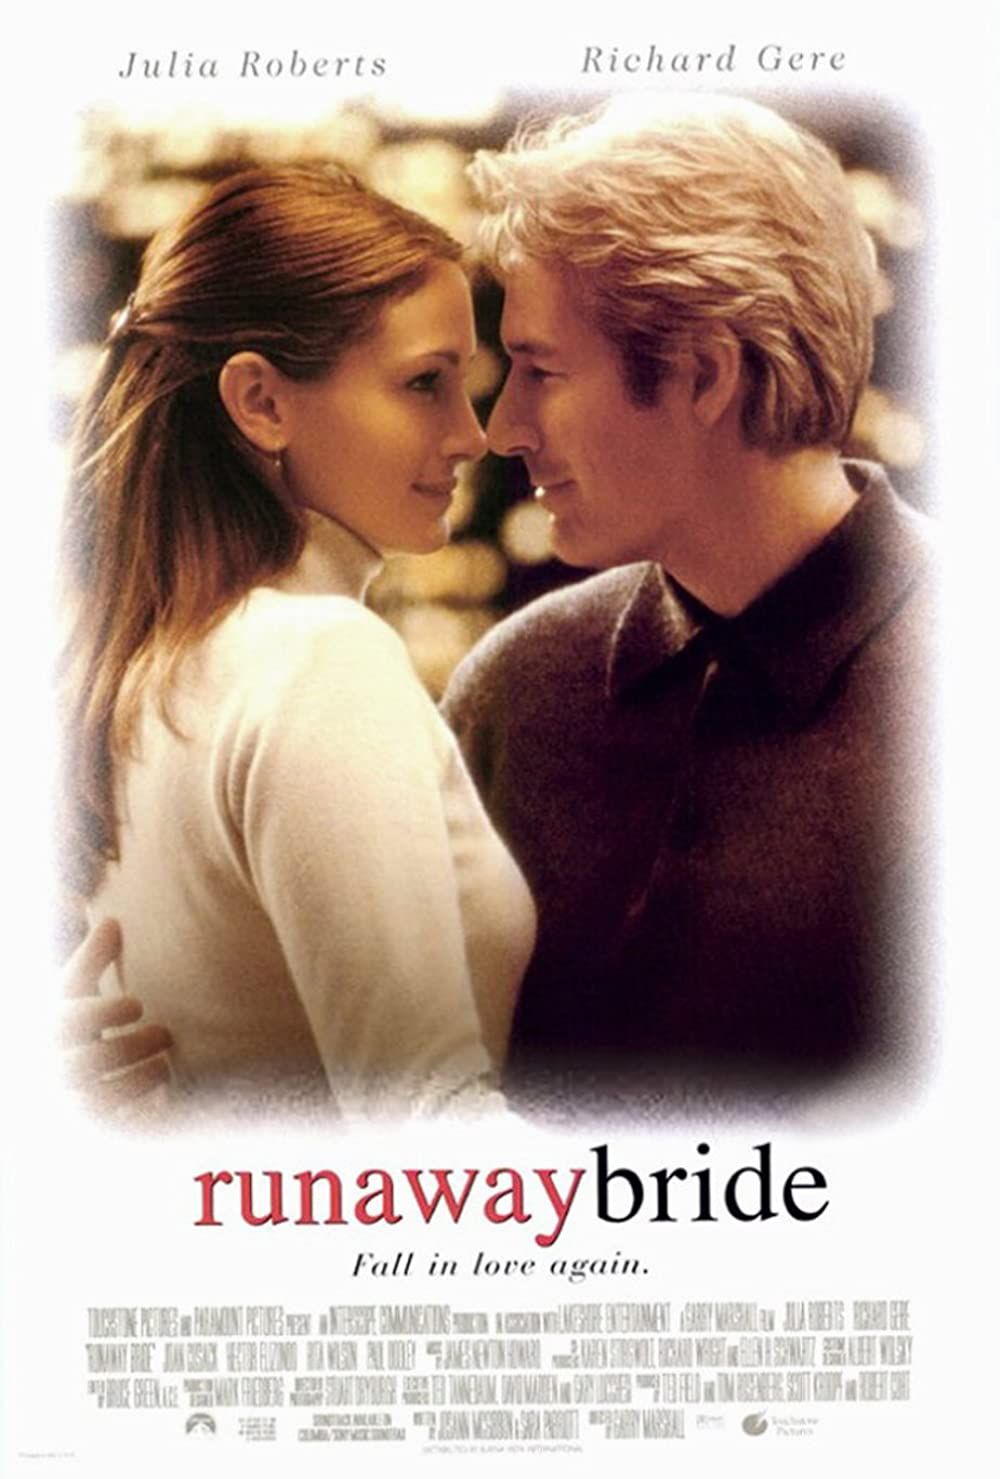 iconic romantic movie posters